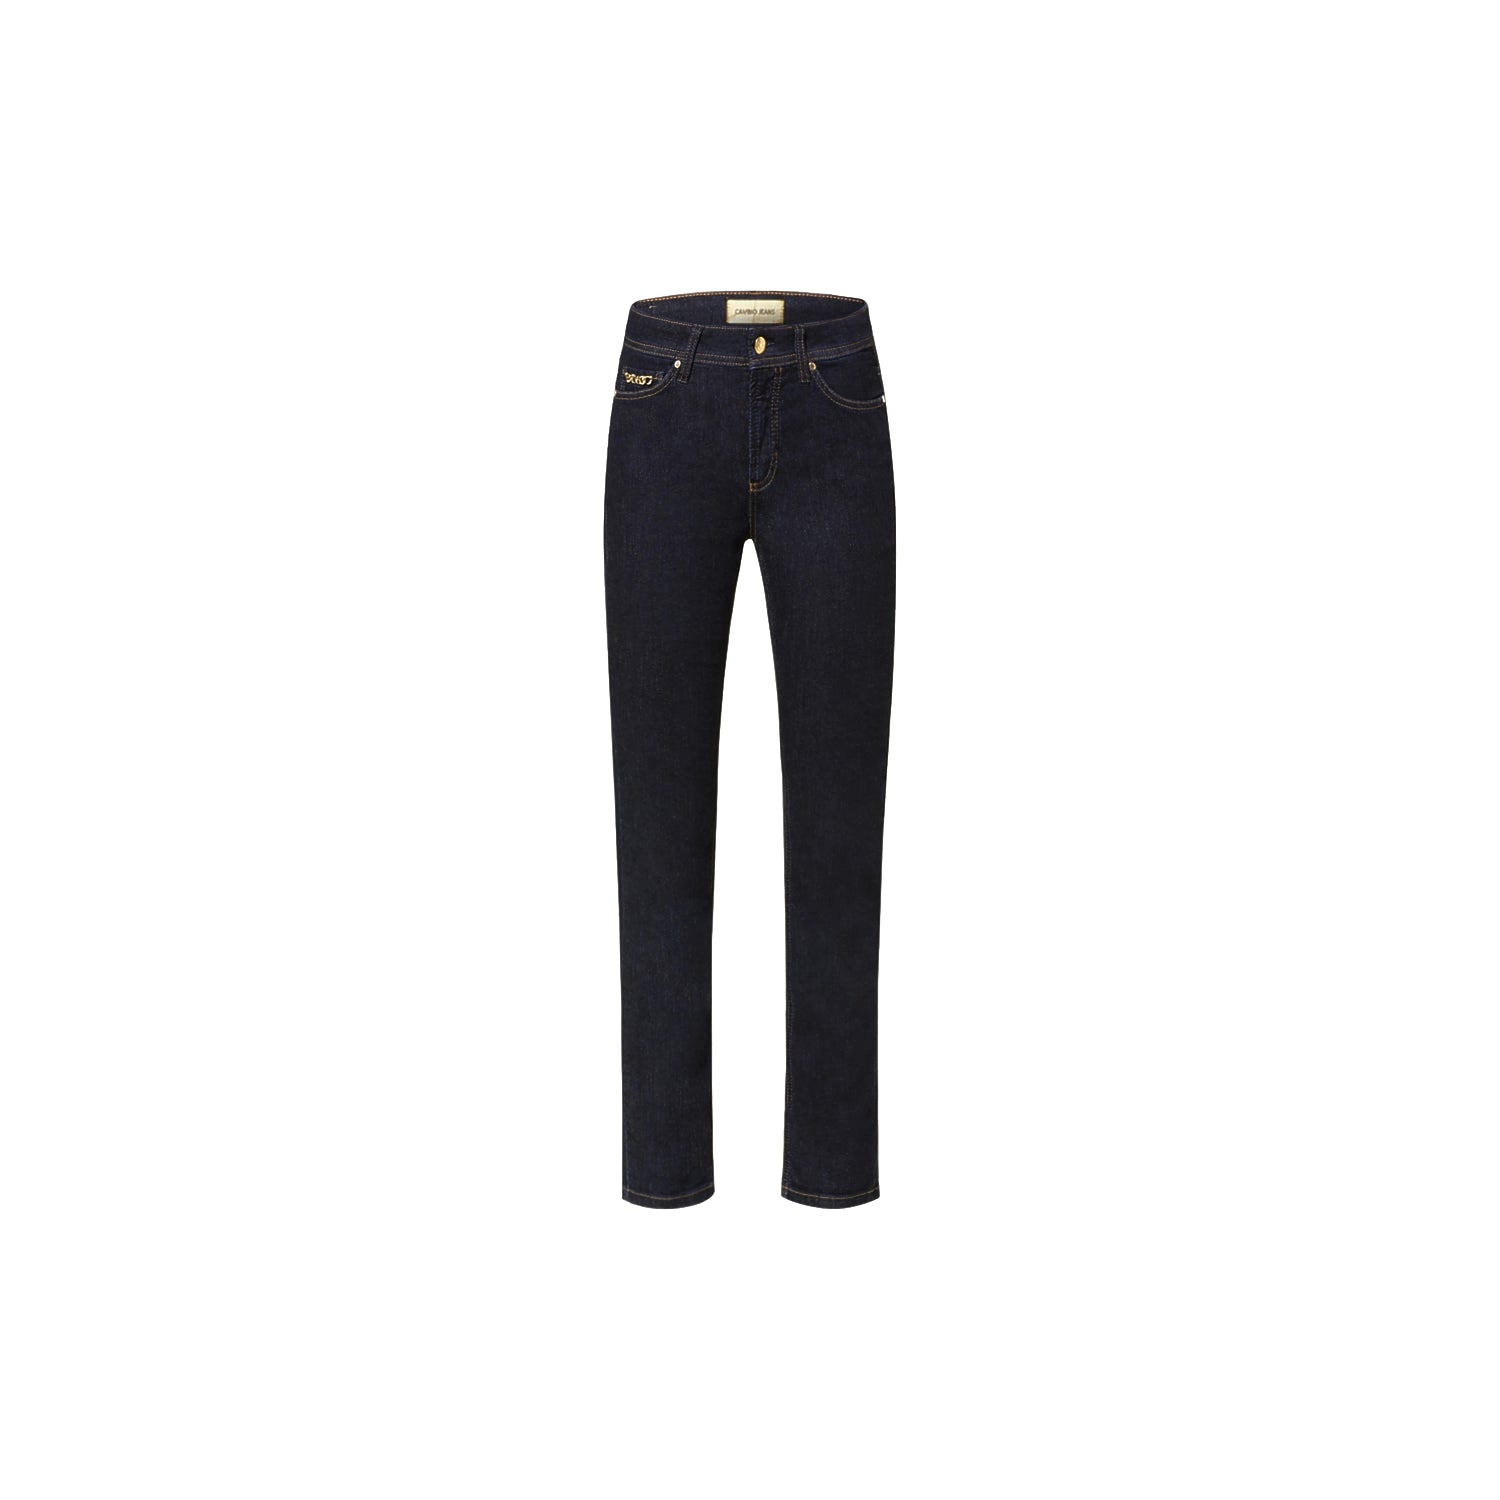 Cambio Jeans Piper cropped in dunkelblau. 5-Pocket Hose in weichen Denim Stretch mit Goldkette von Cambio online kaufen. 7/8 Jeans in cleanem indigo blau mit schmalem Schnitt aus der neuen Cambio Kollektion.